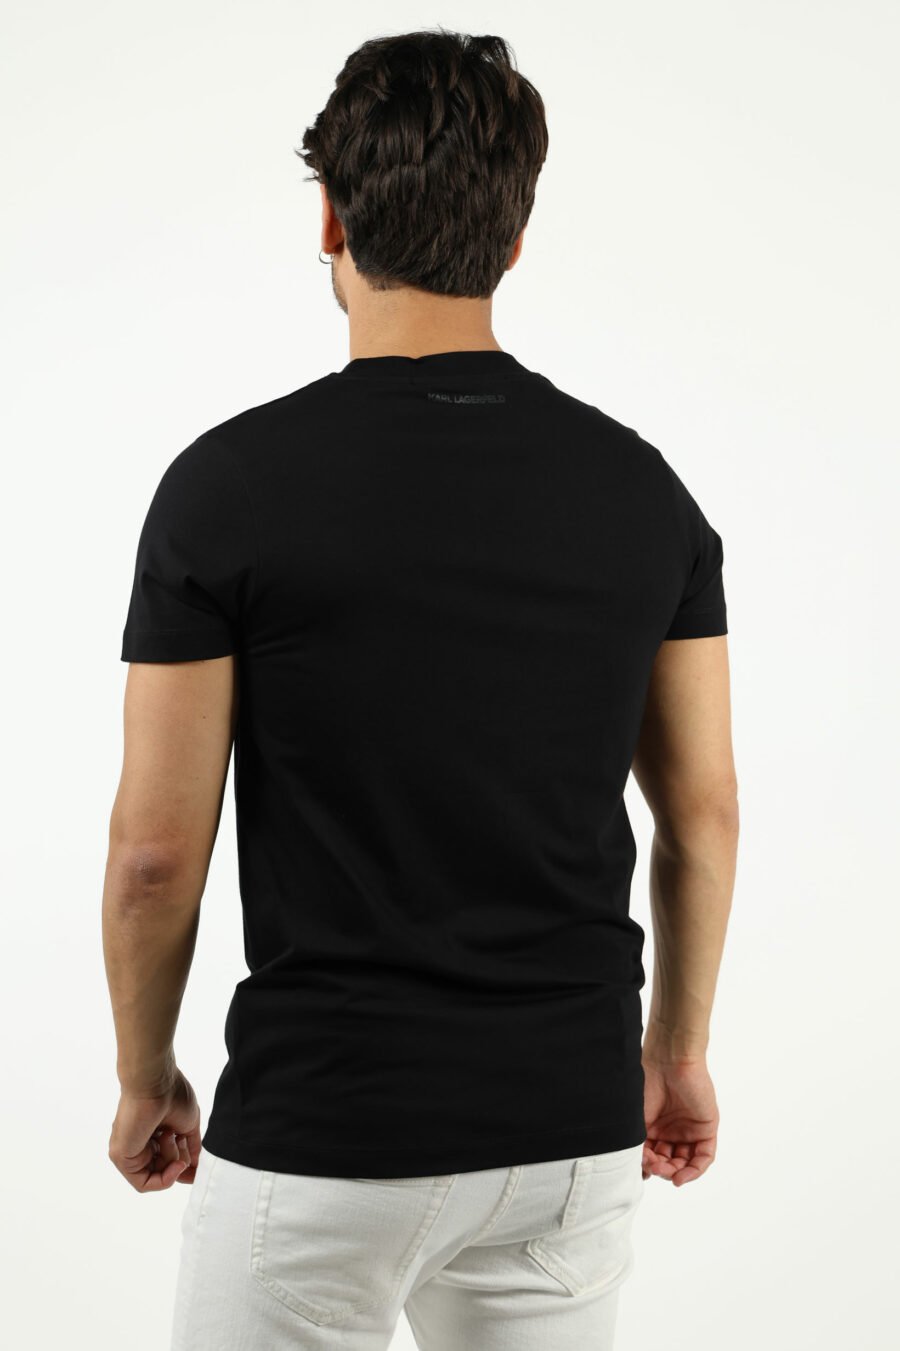 Camiseta negra con maxilogo monocromático centrado - number14234